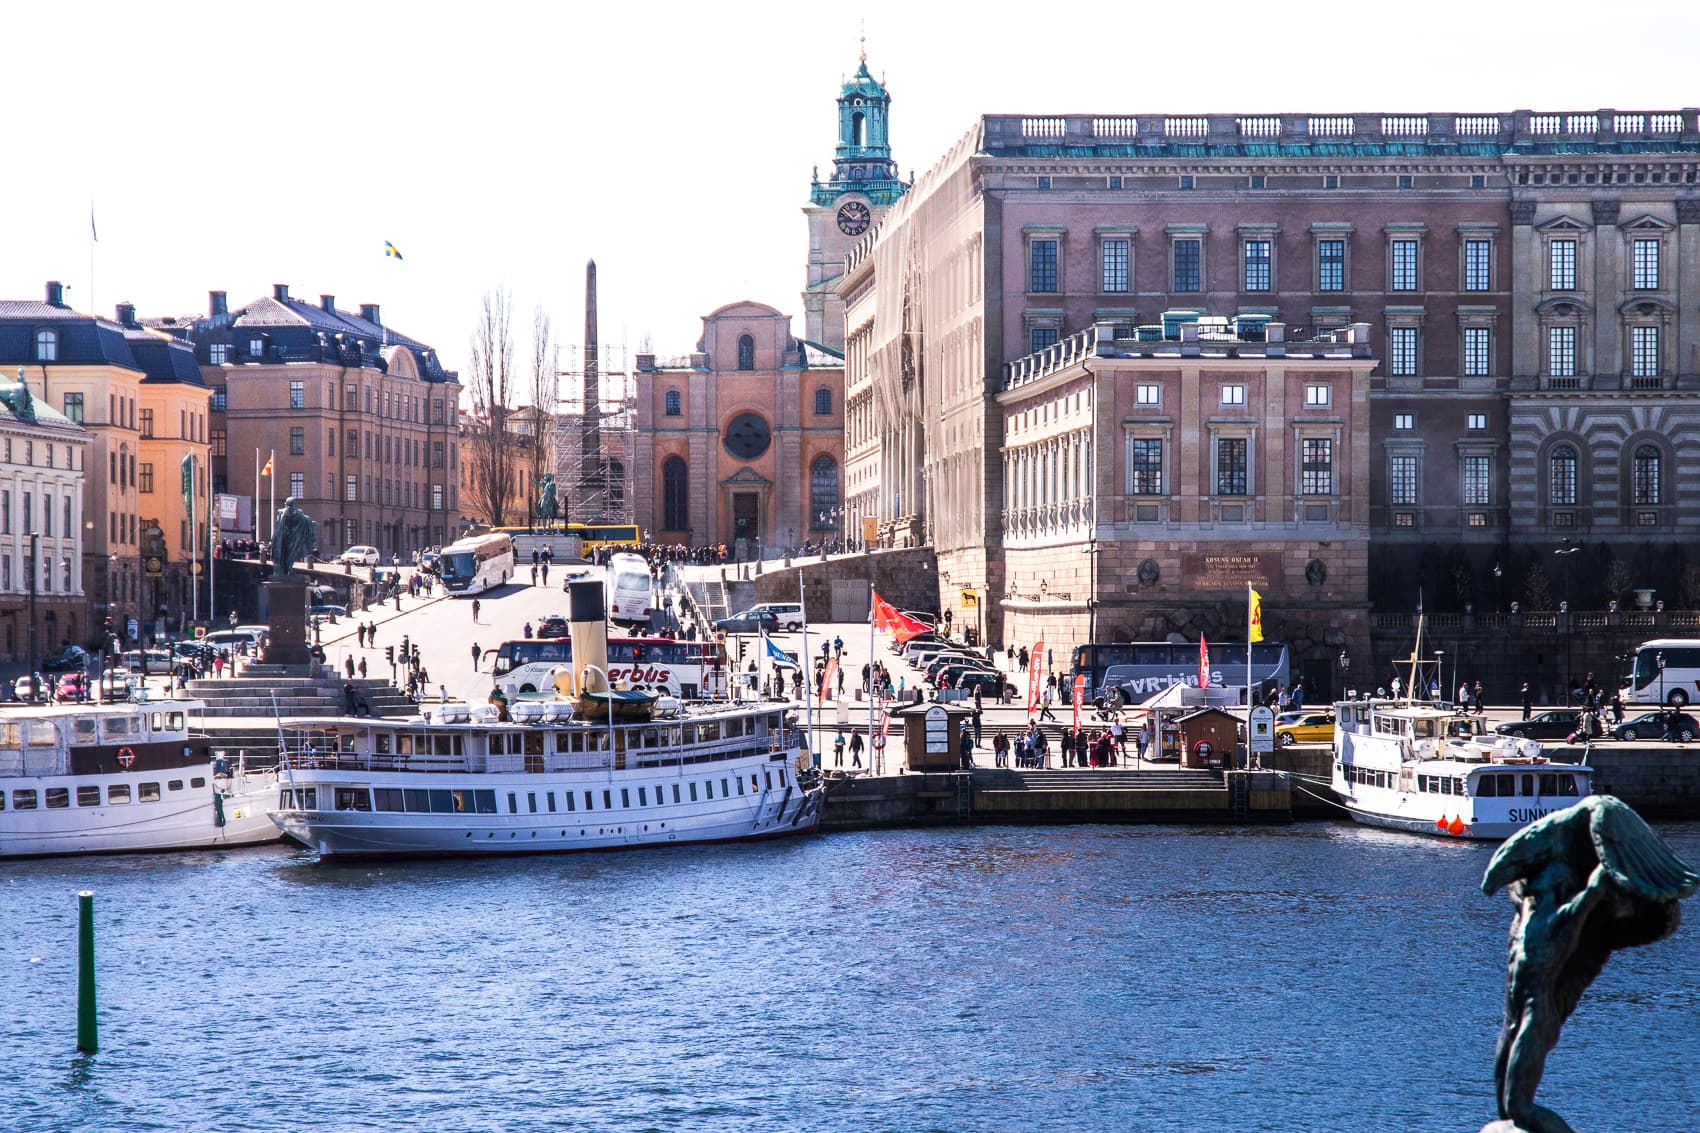 Städtereise nach Stockholm - 3 Tage in der schwedischen Hauptstadt